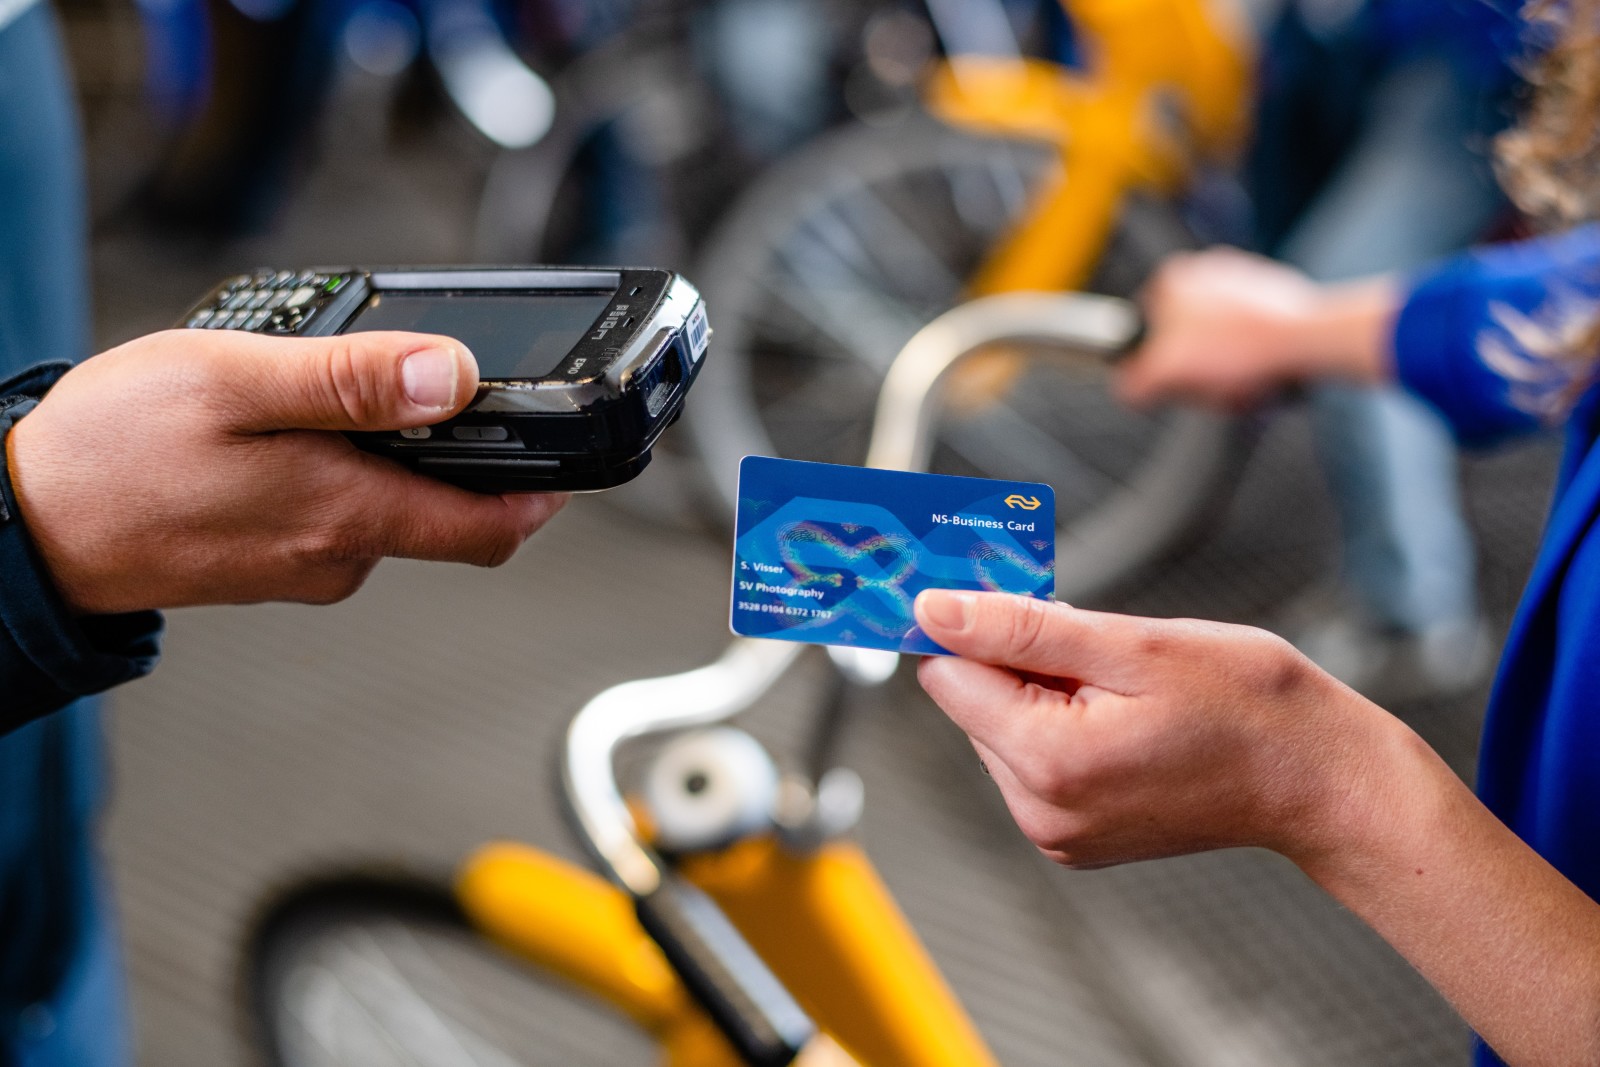 Ook de OV-fiets betaal en gebruik je met je NS-Business Card